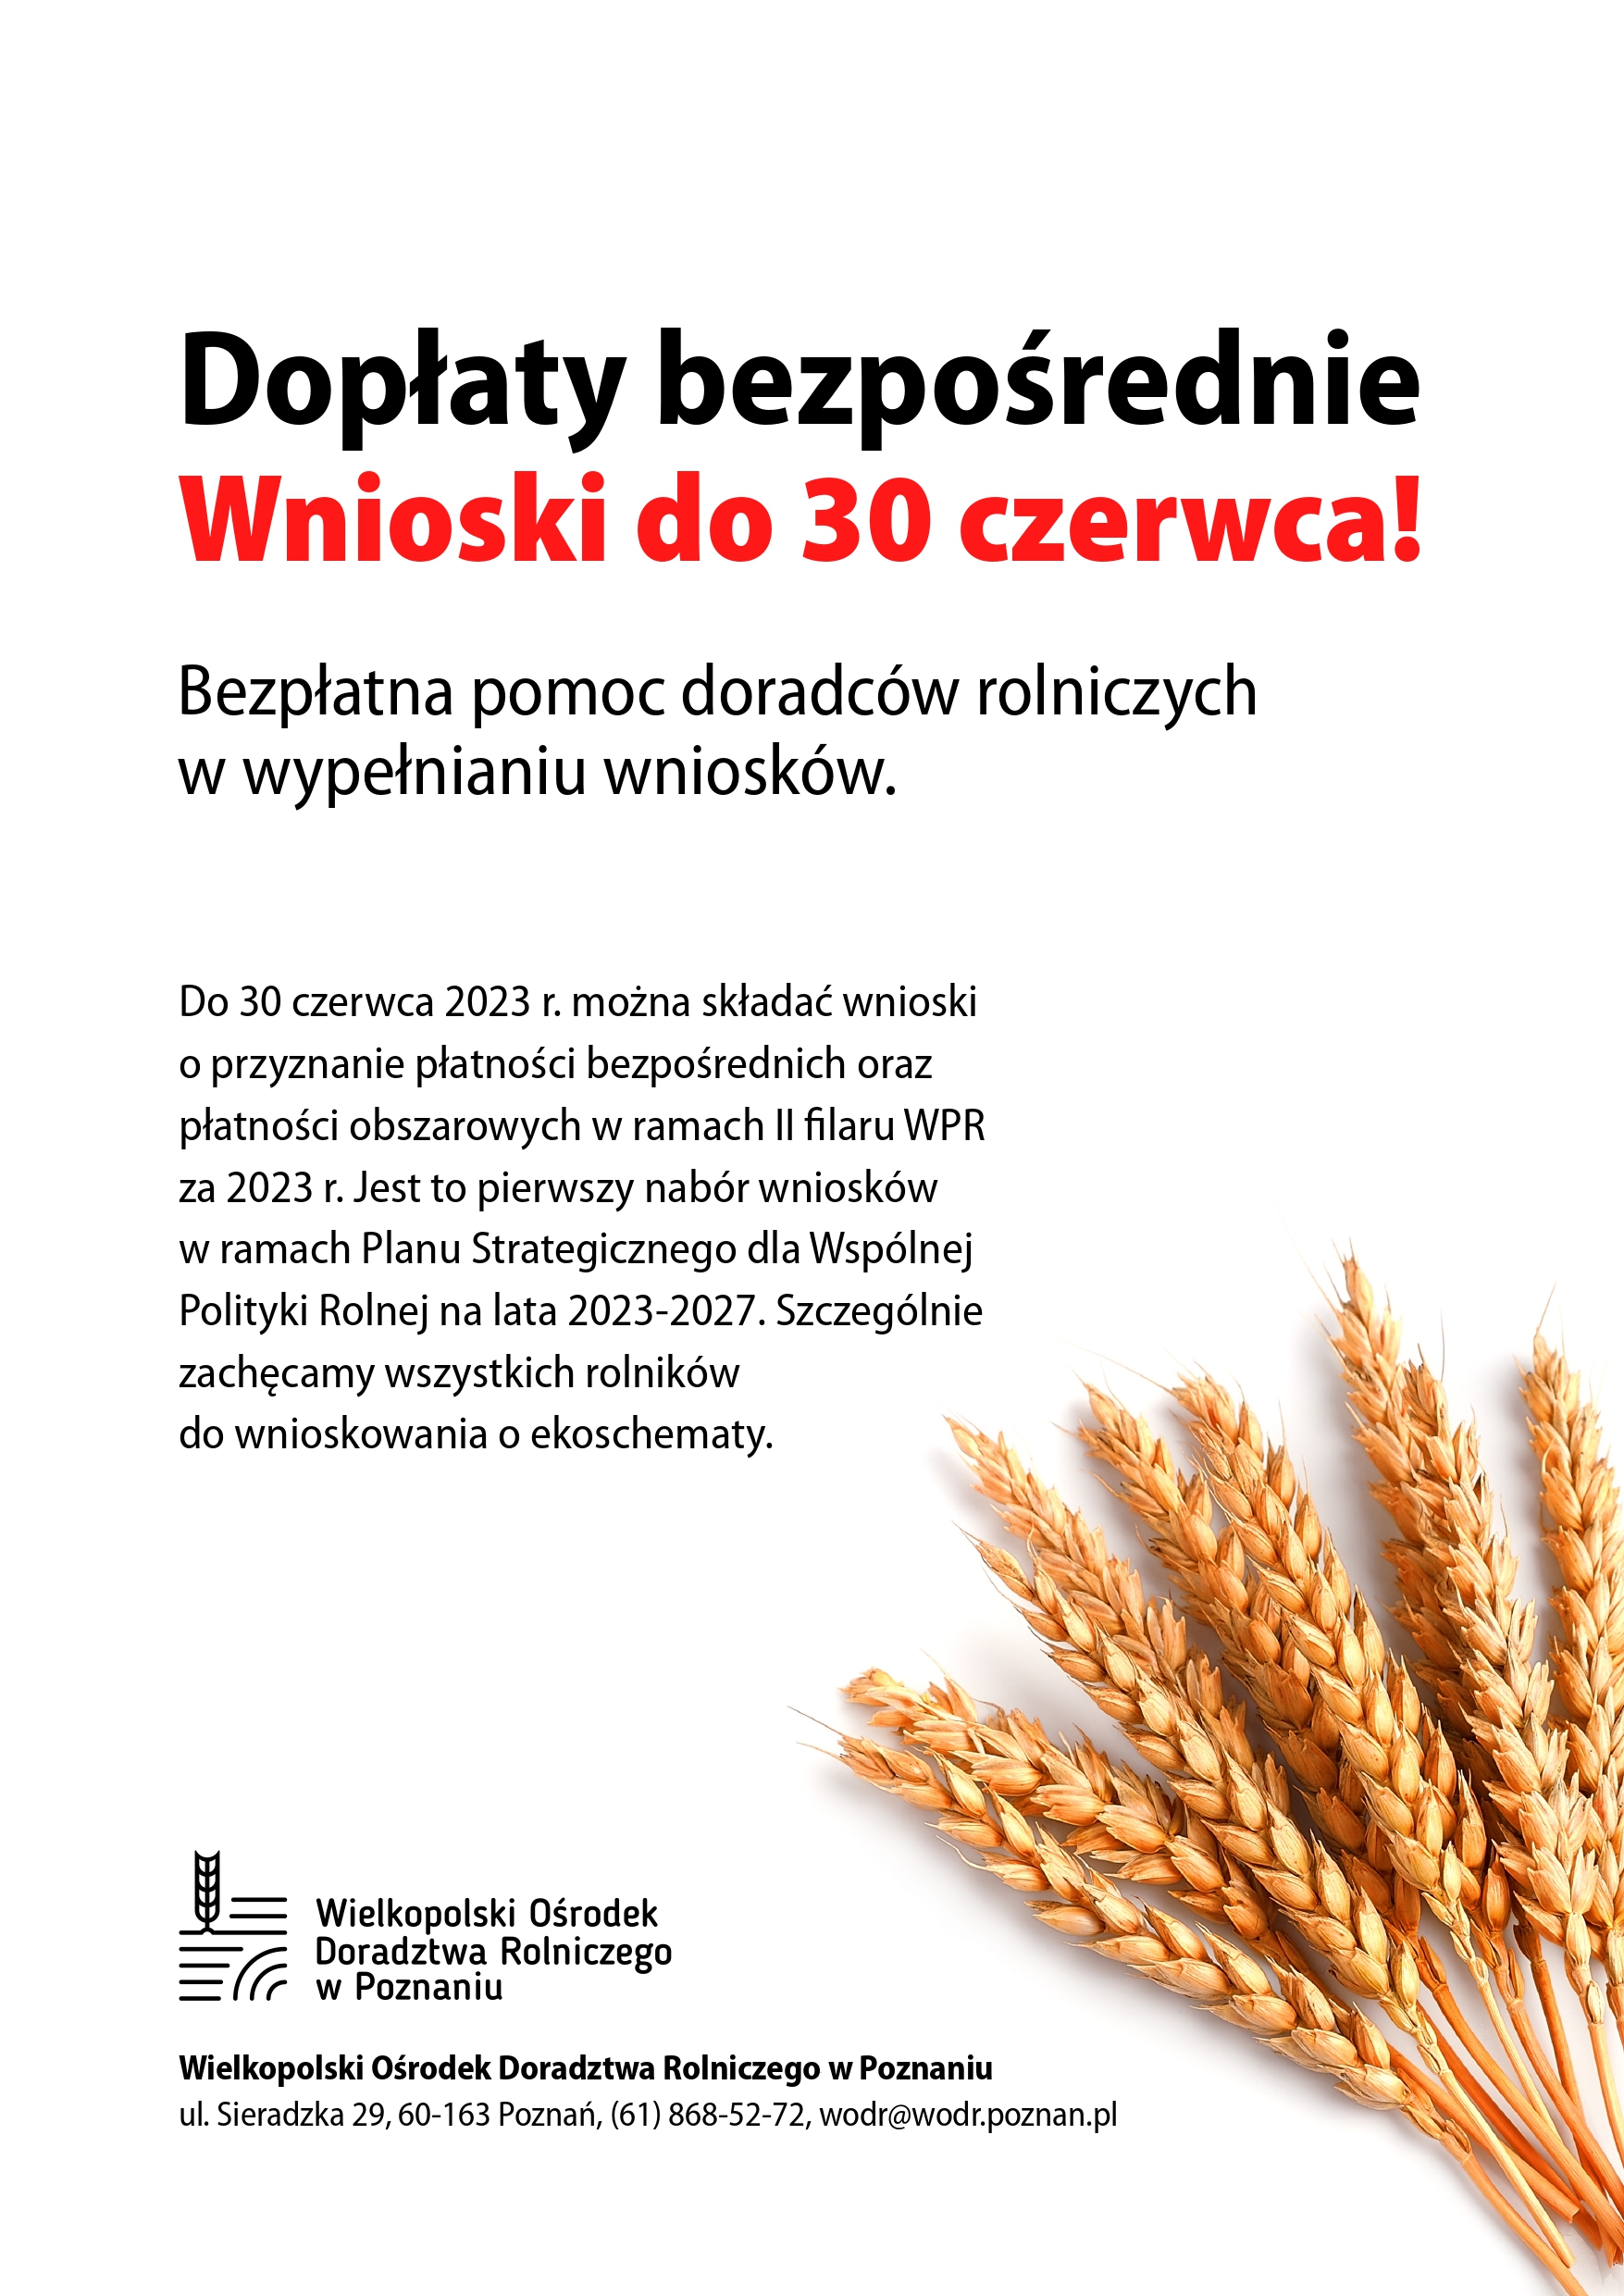 Doplaty bezposrednie plakat 1 - Ministerstwo Rolnictwa i Rozwoju Wsi informuje o możliwości uzyskania dopłat przez rolników